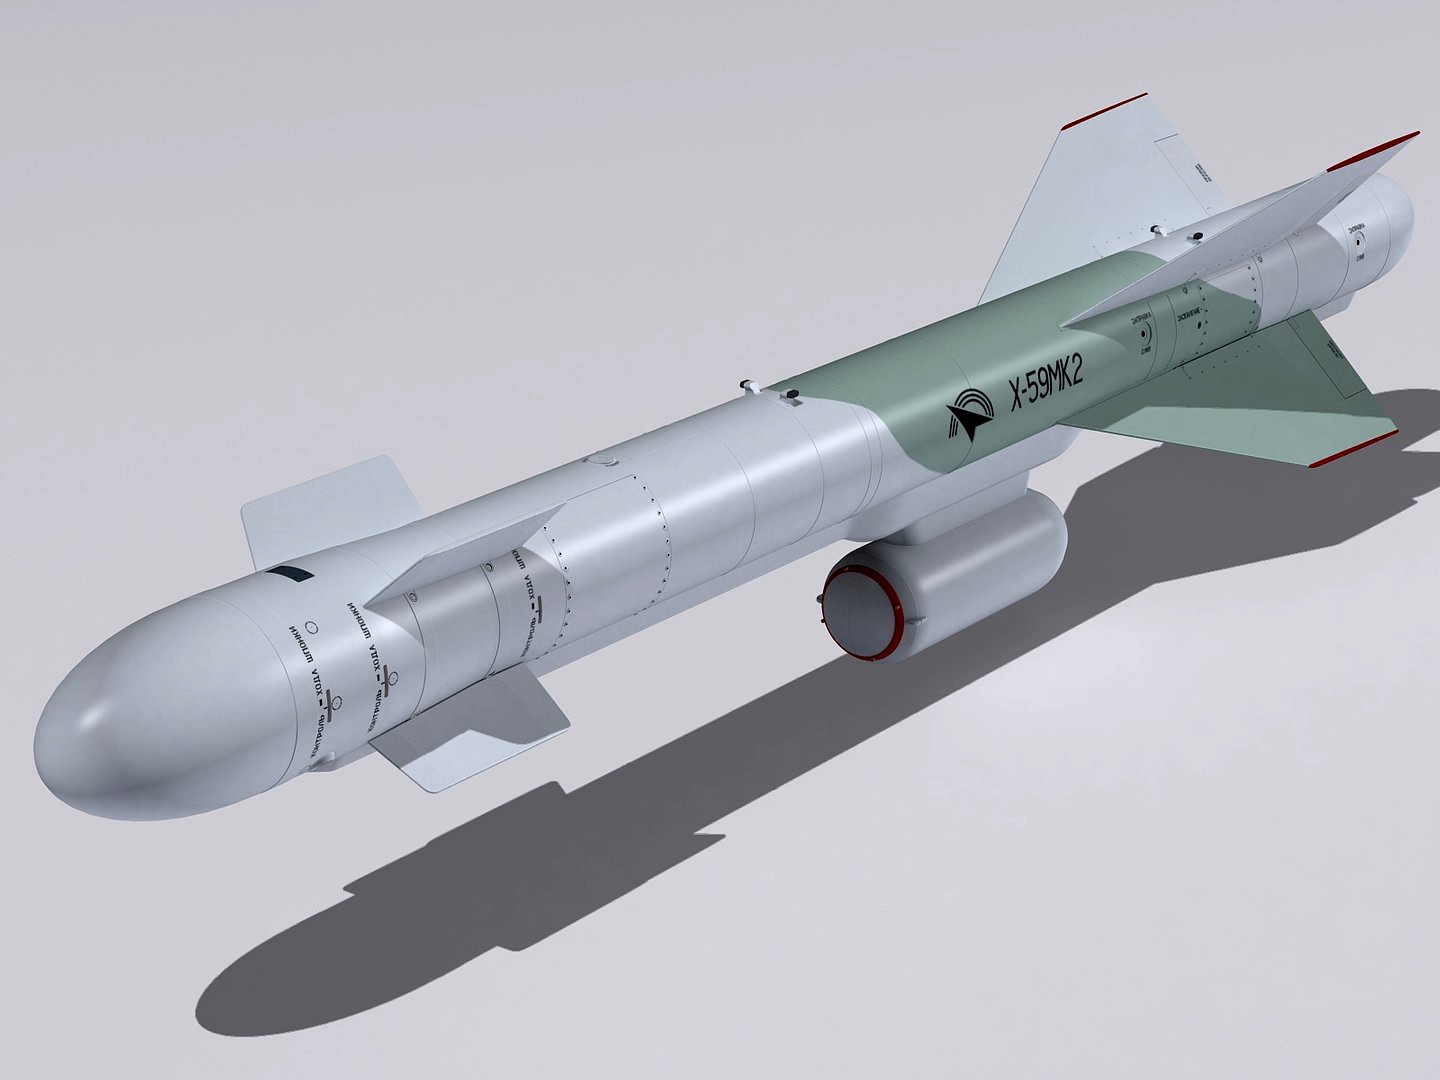 Kh-59MK2 missile.